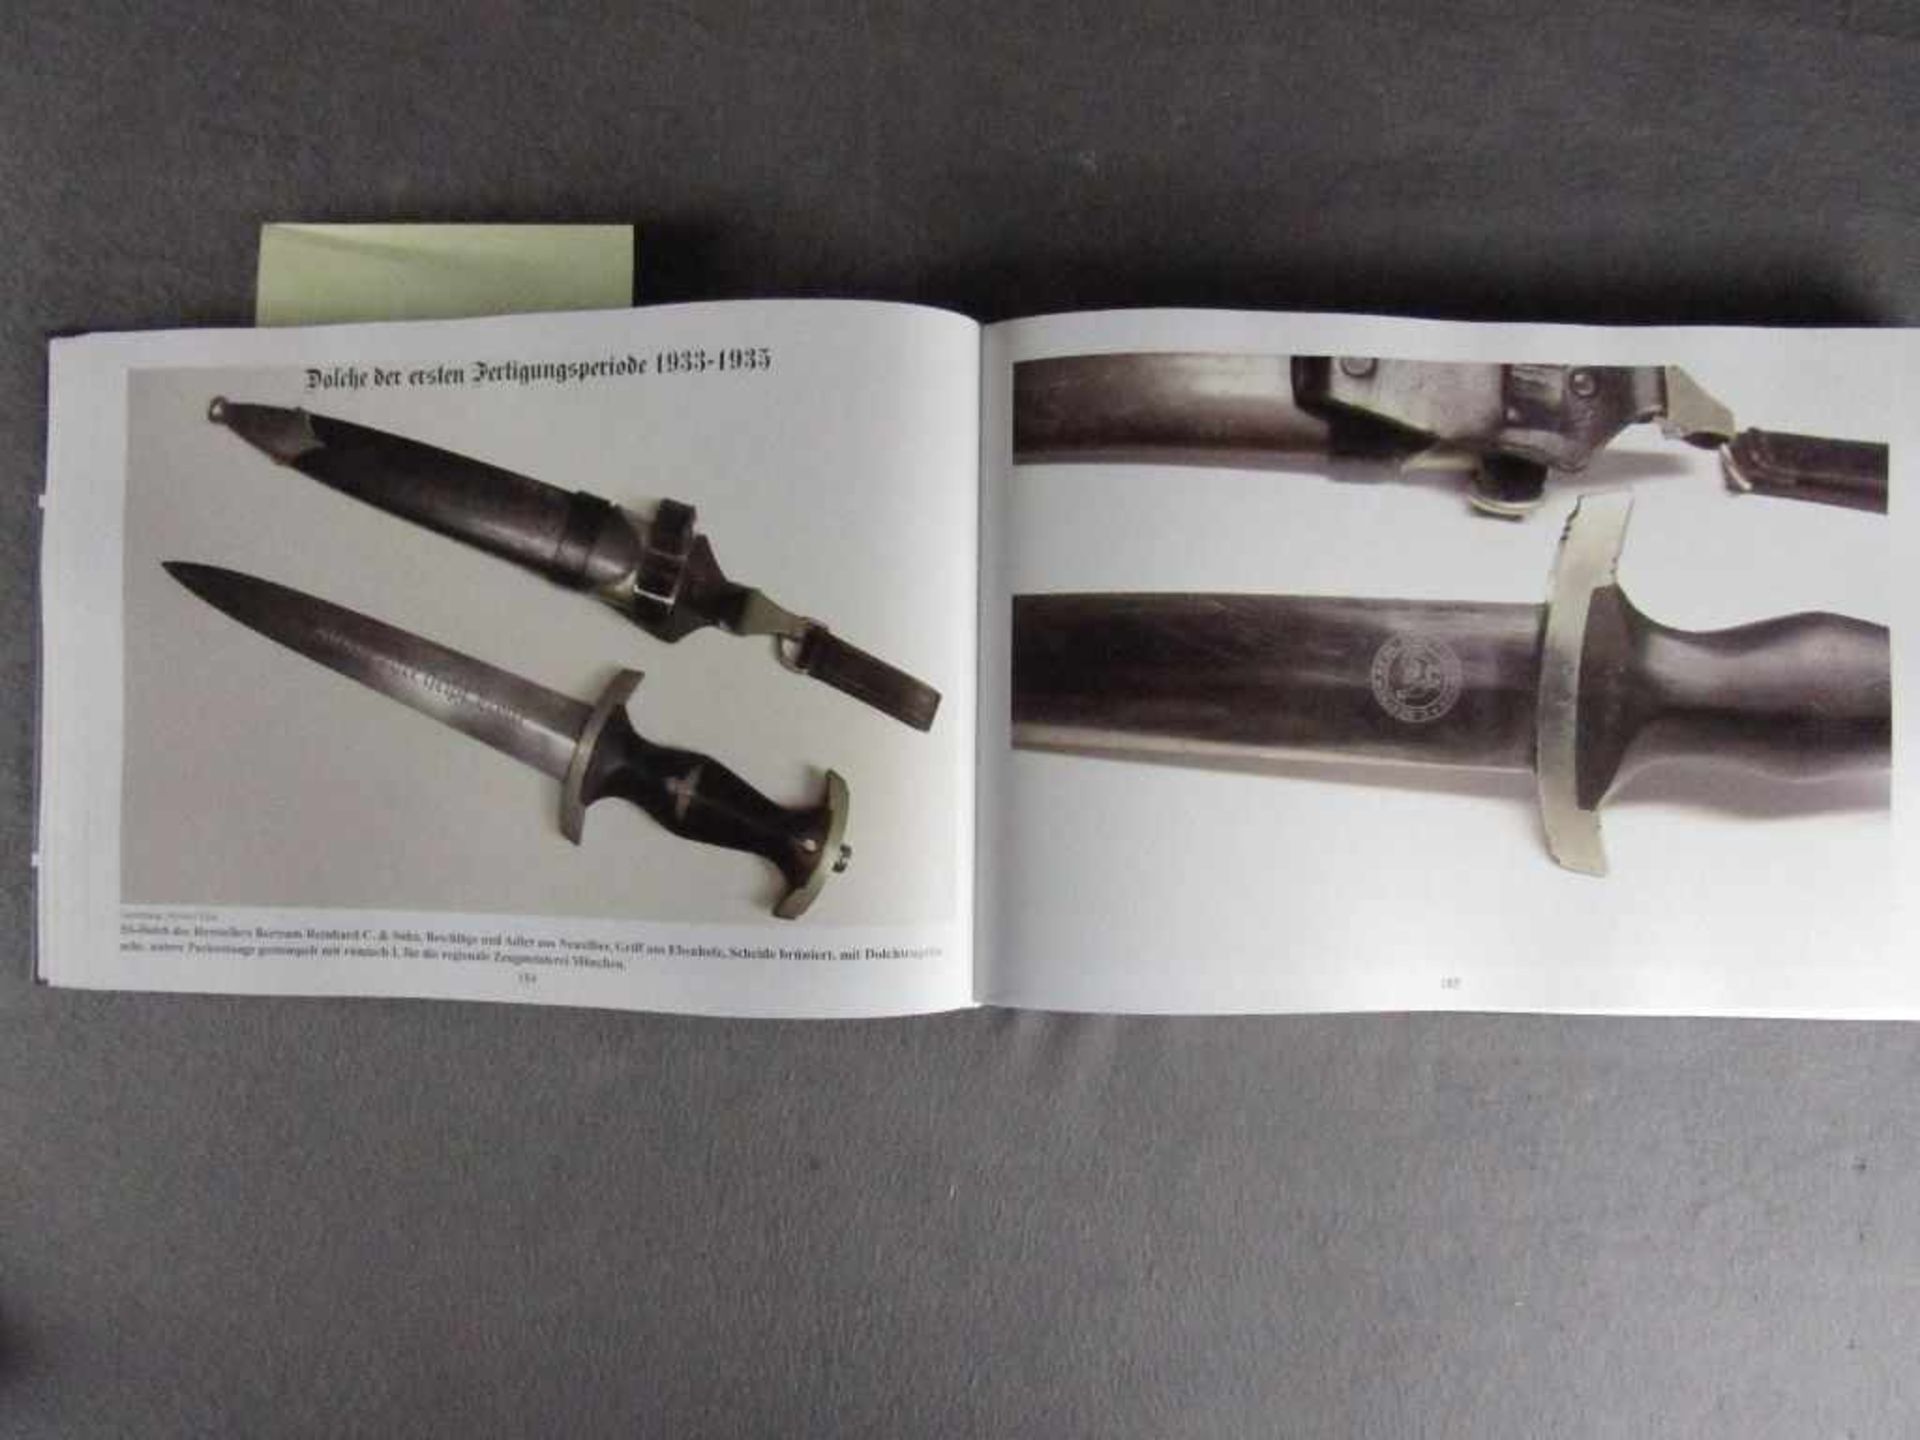 Sehr seltenes Buch Referenzbuch zur Bestimmung der Dienstdolche für SS ein Muss für jeden Sammler<b - Image 4 of 7